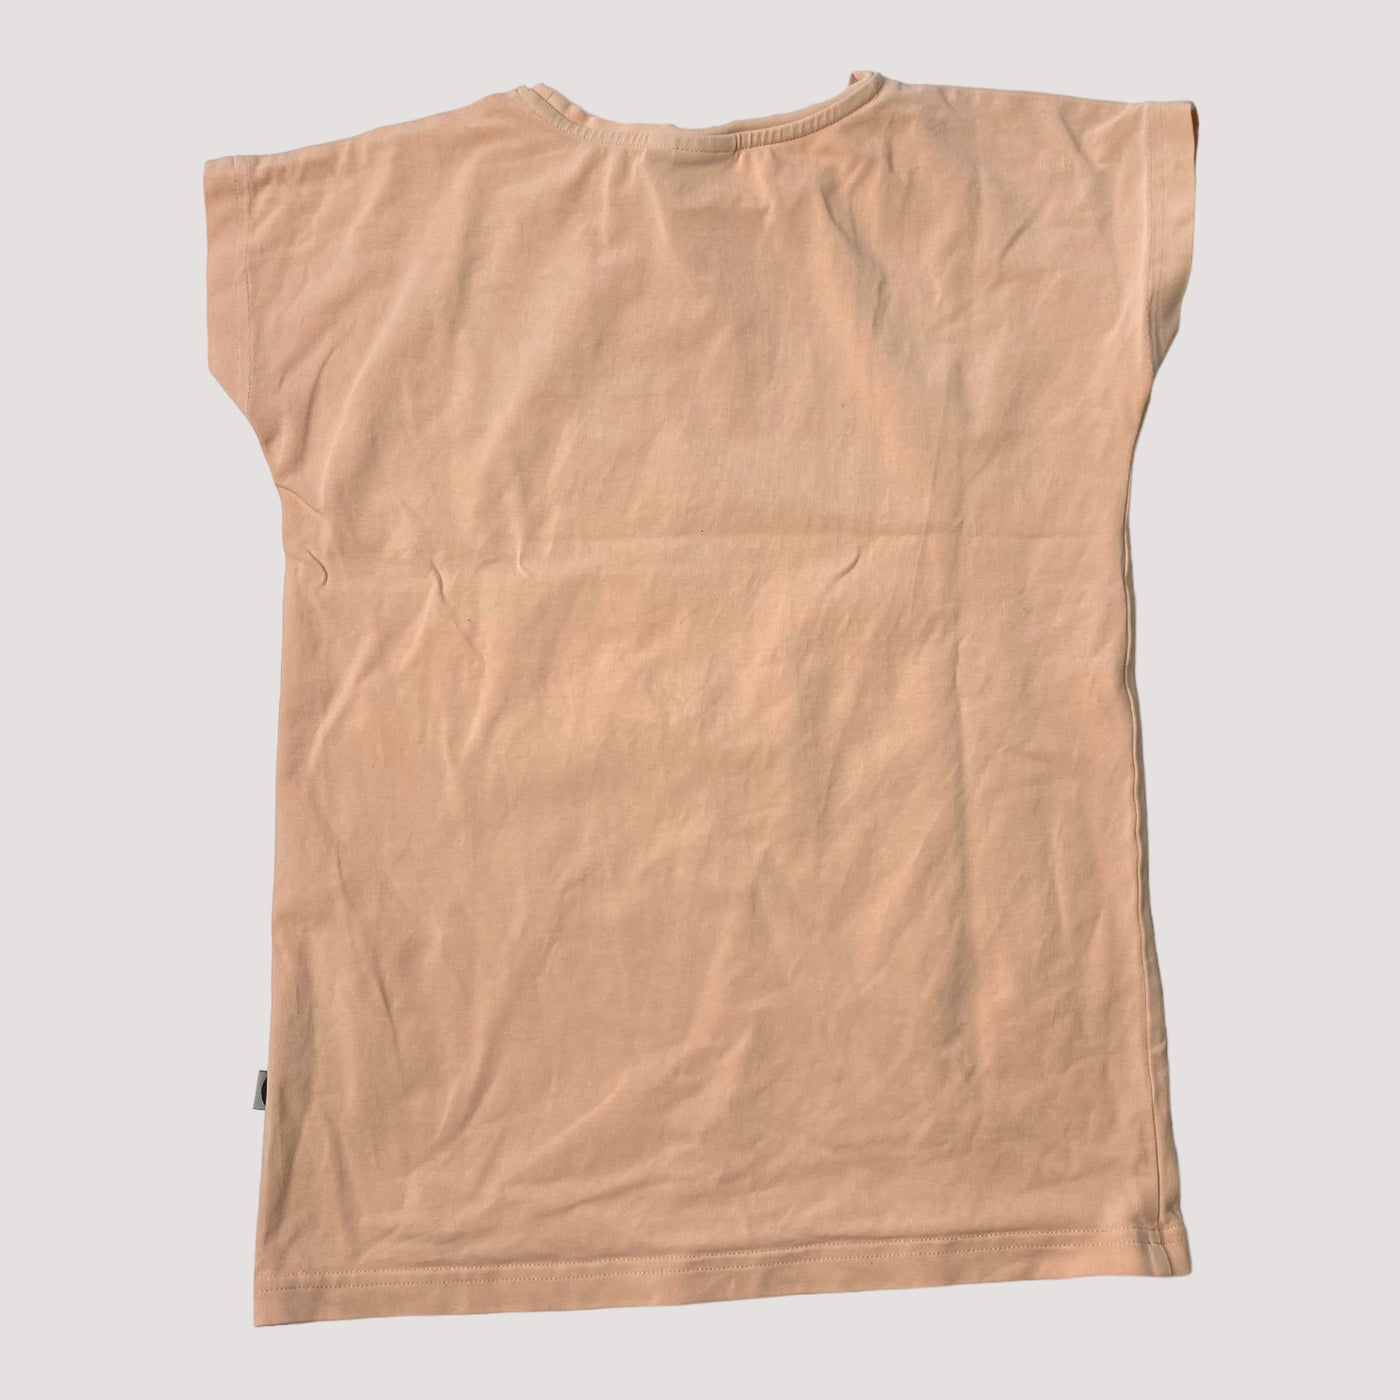 Papu t-shirt, hot air balloon | 134/140cm